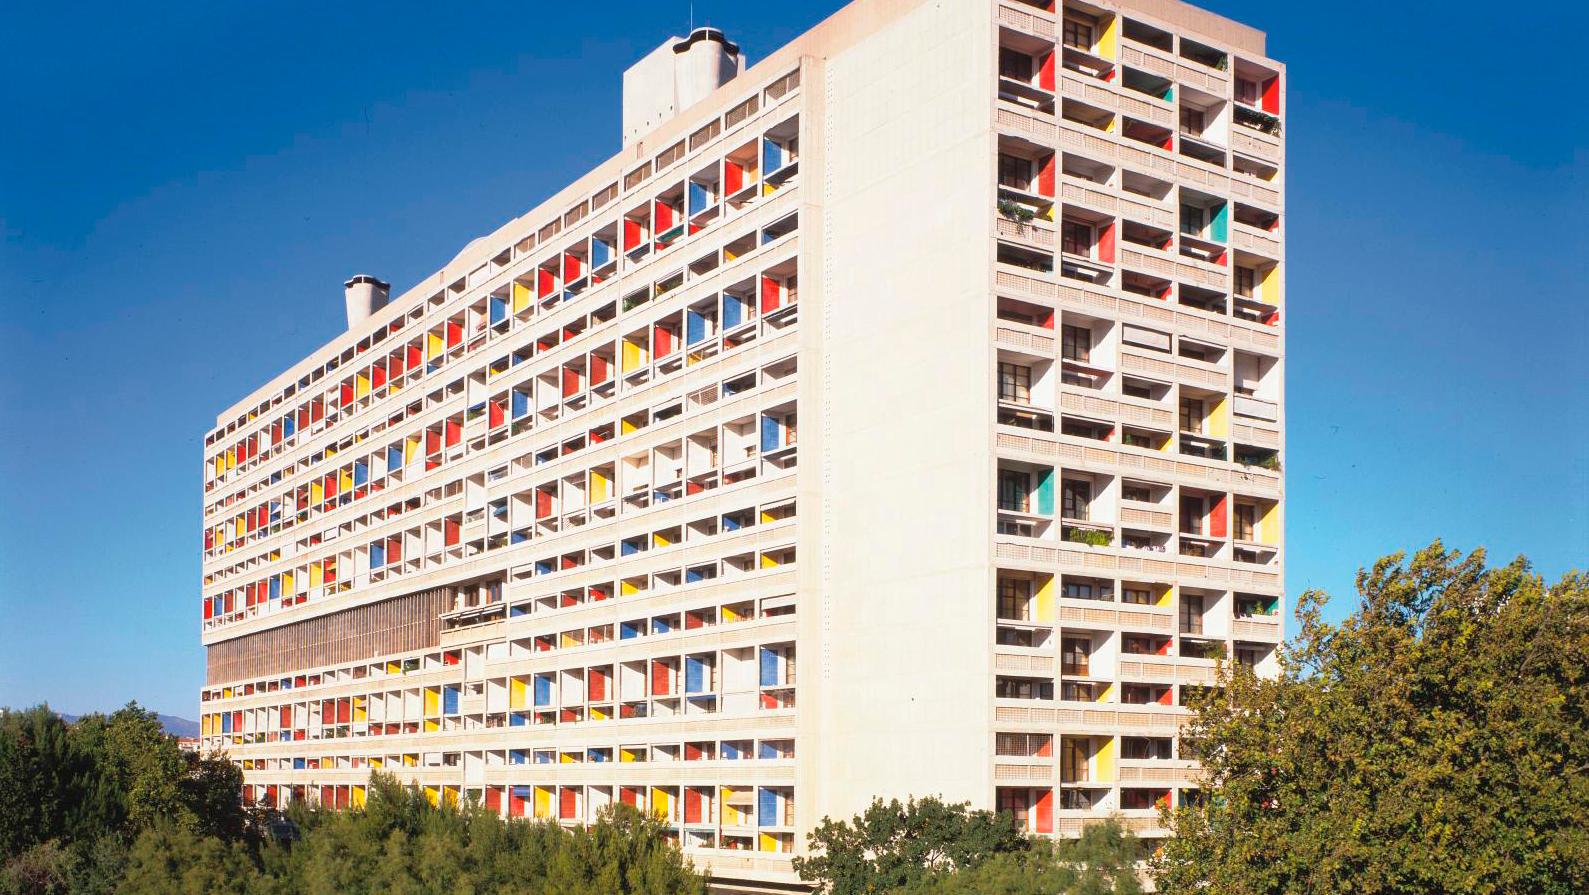 © FLC / ADAGP Photo : P. Kozlowski Le Corbusier's Cité Radieuse in Marseille: The End of a Utopia?